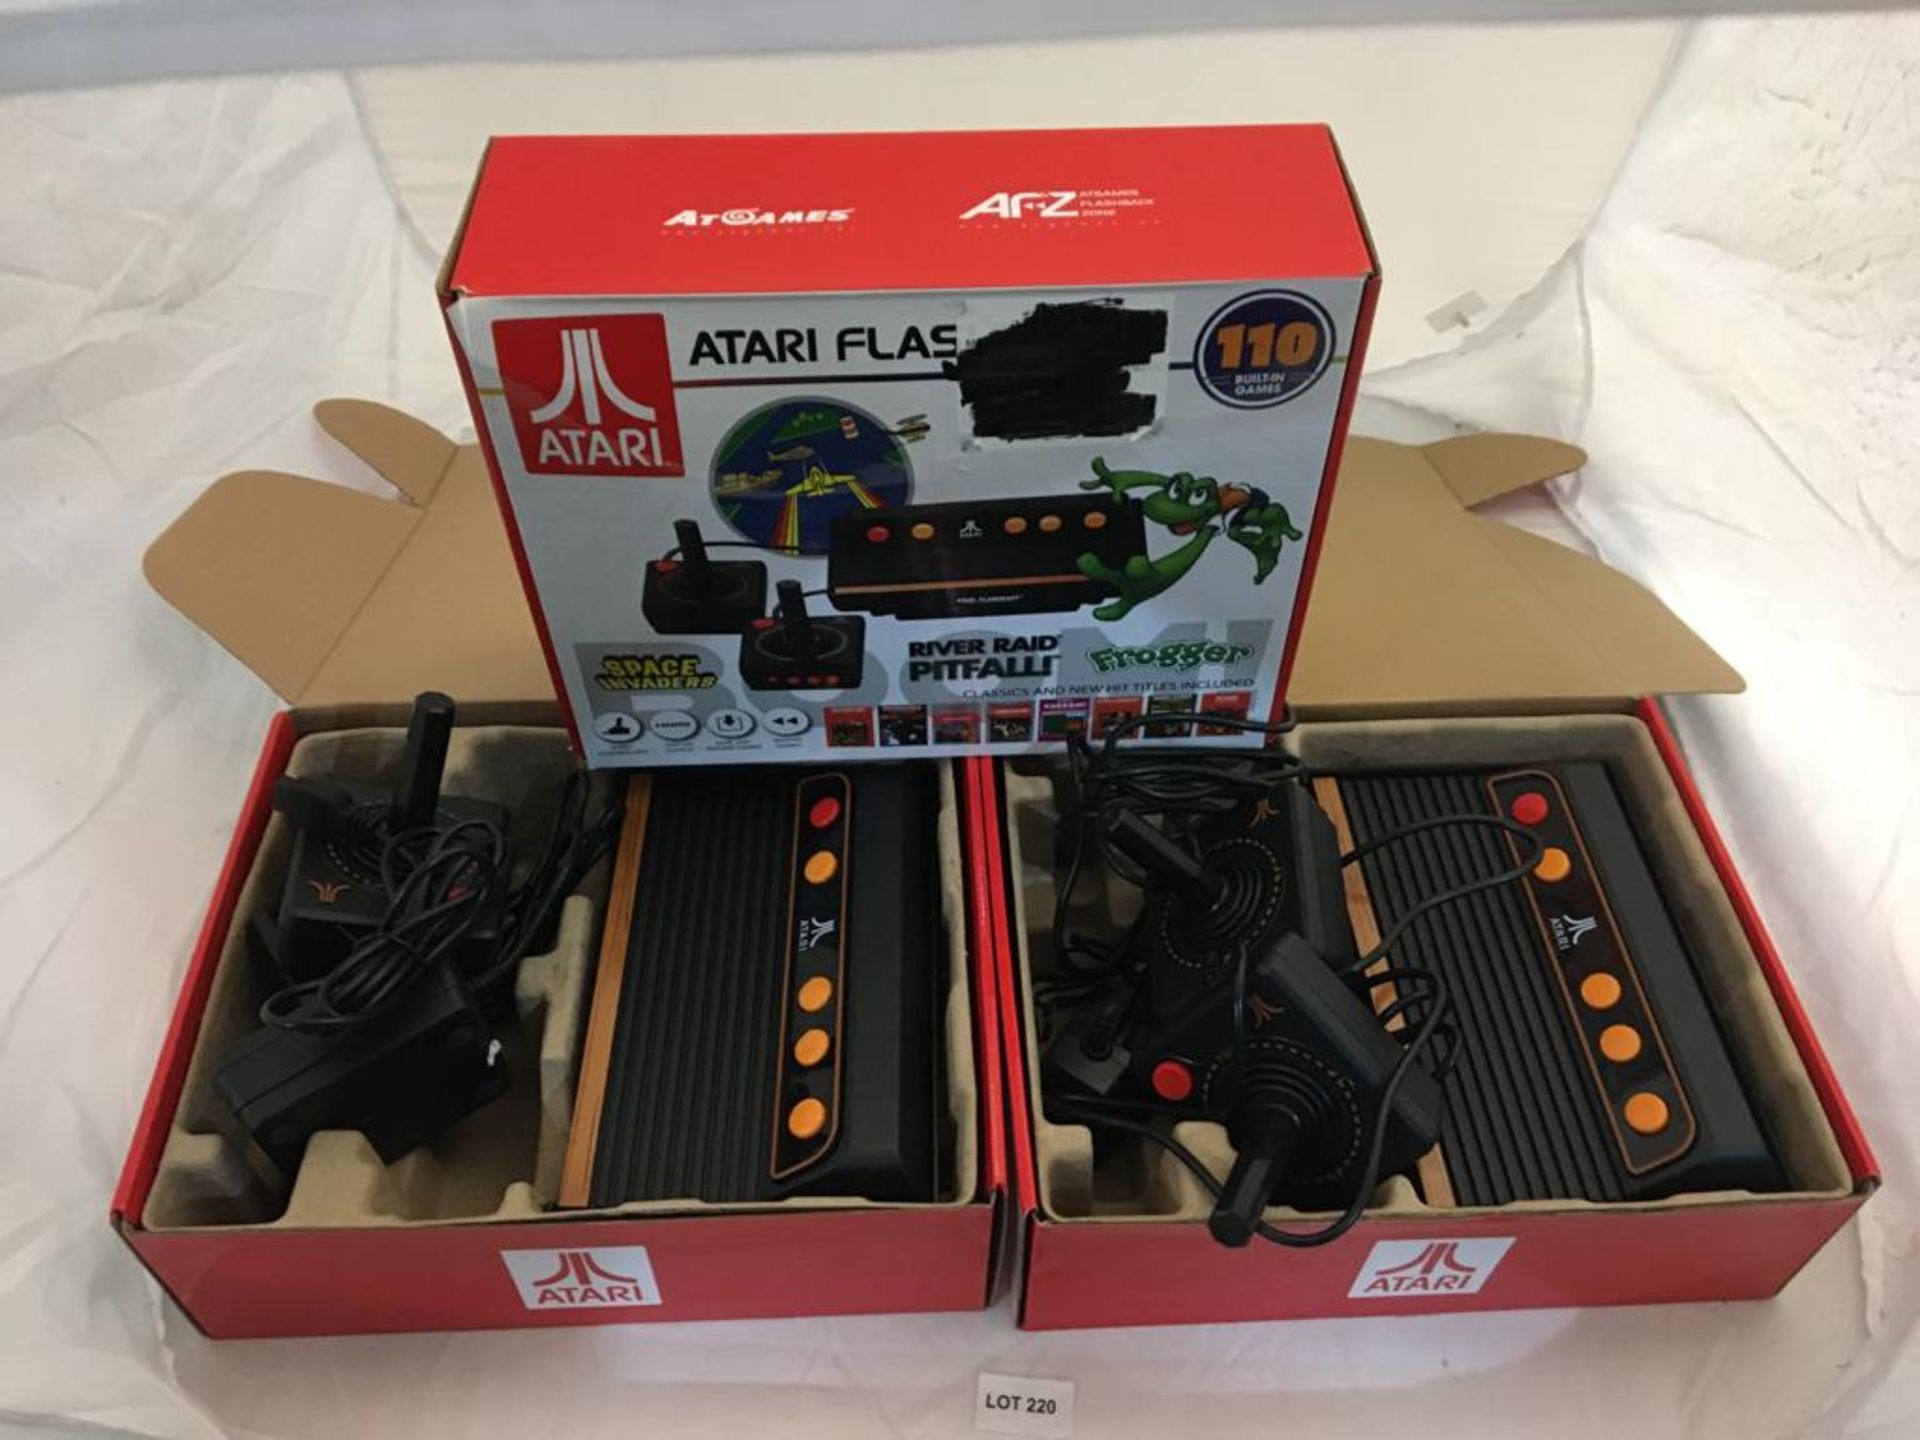 3 x ATARI retro gaming consoles